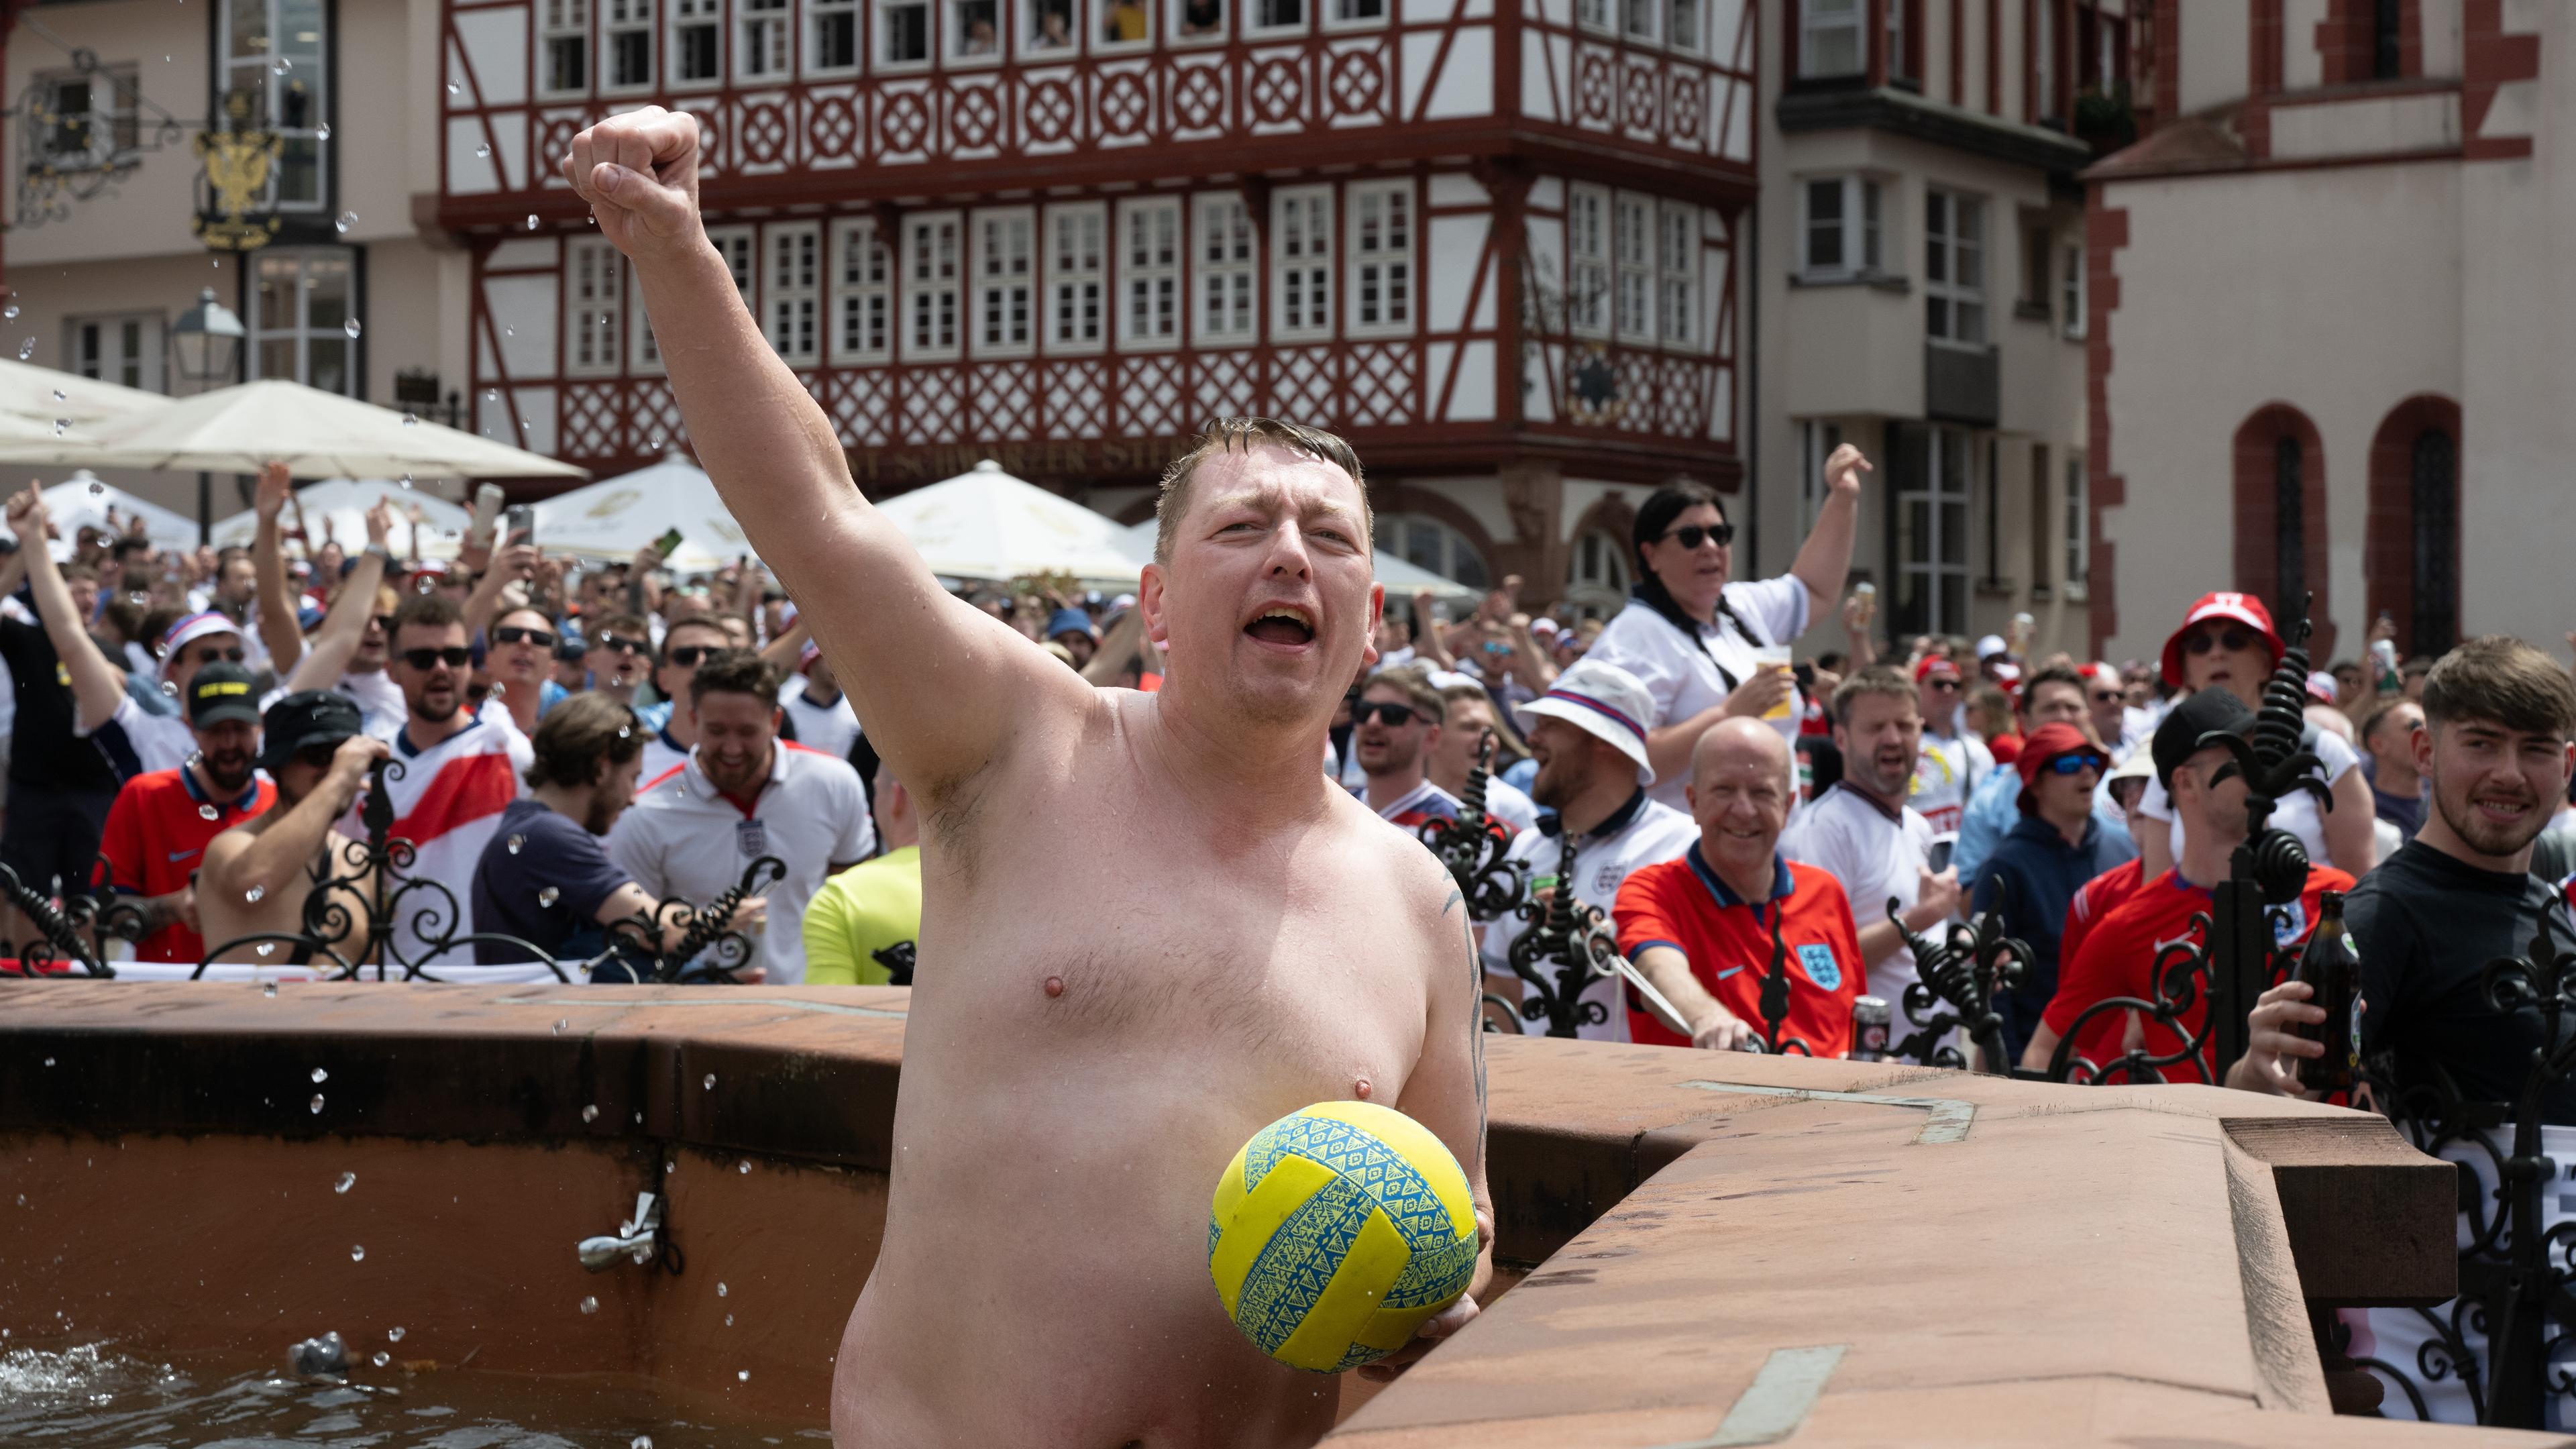 Englische Fans feiern auf dem Römerberg. Dabei ist ein Mann halb nackt in den Justitia-Brunnen gestiegen.